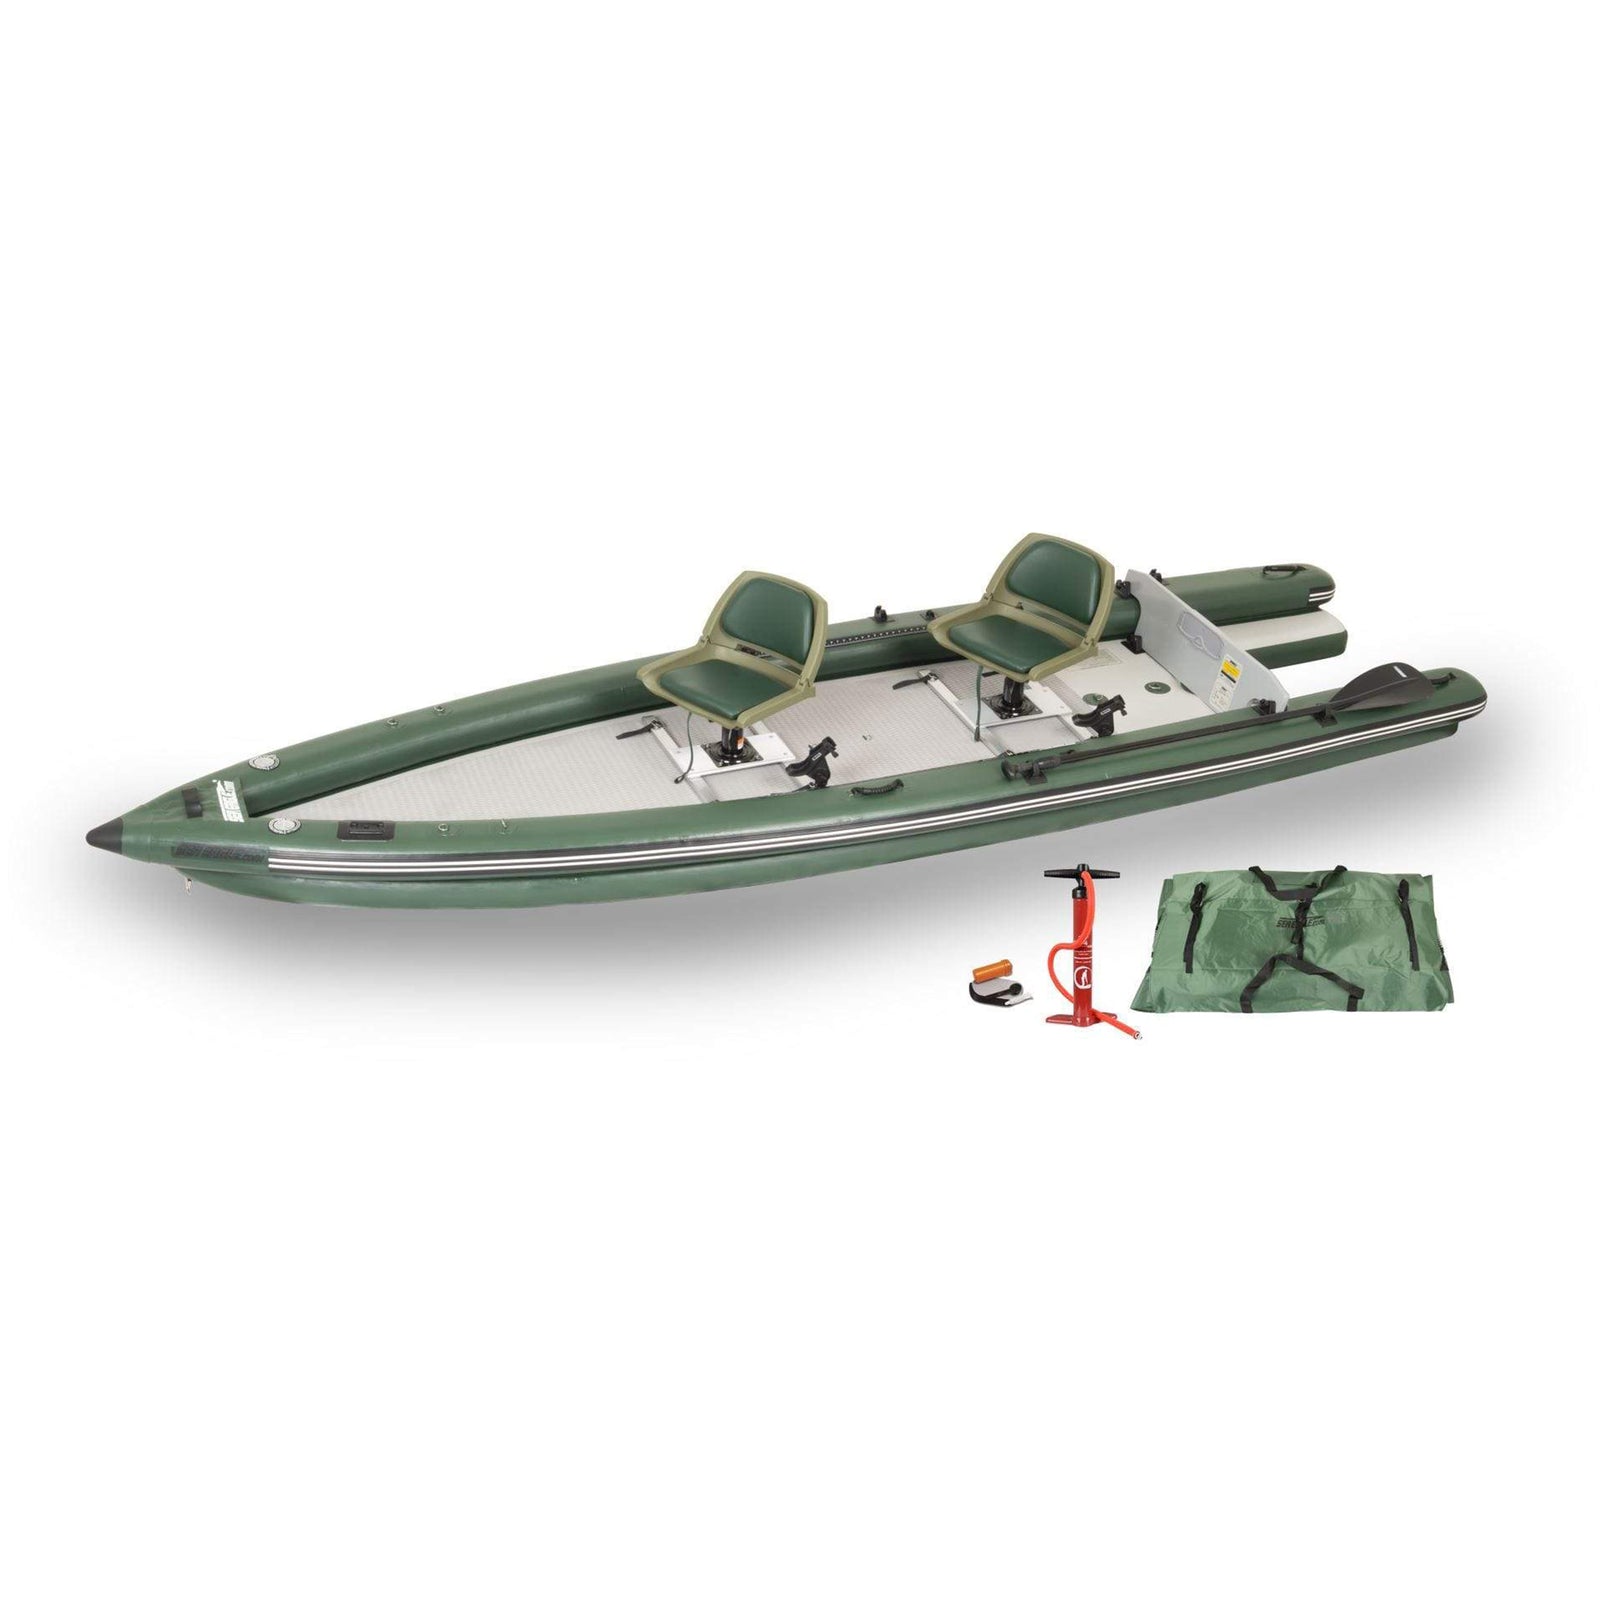 3067 – Stainless Steel Seat Swivel, Kayaks, Fishing, Hunting